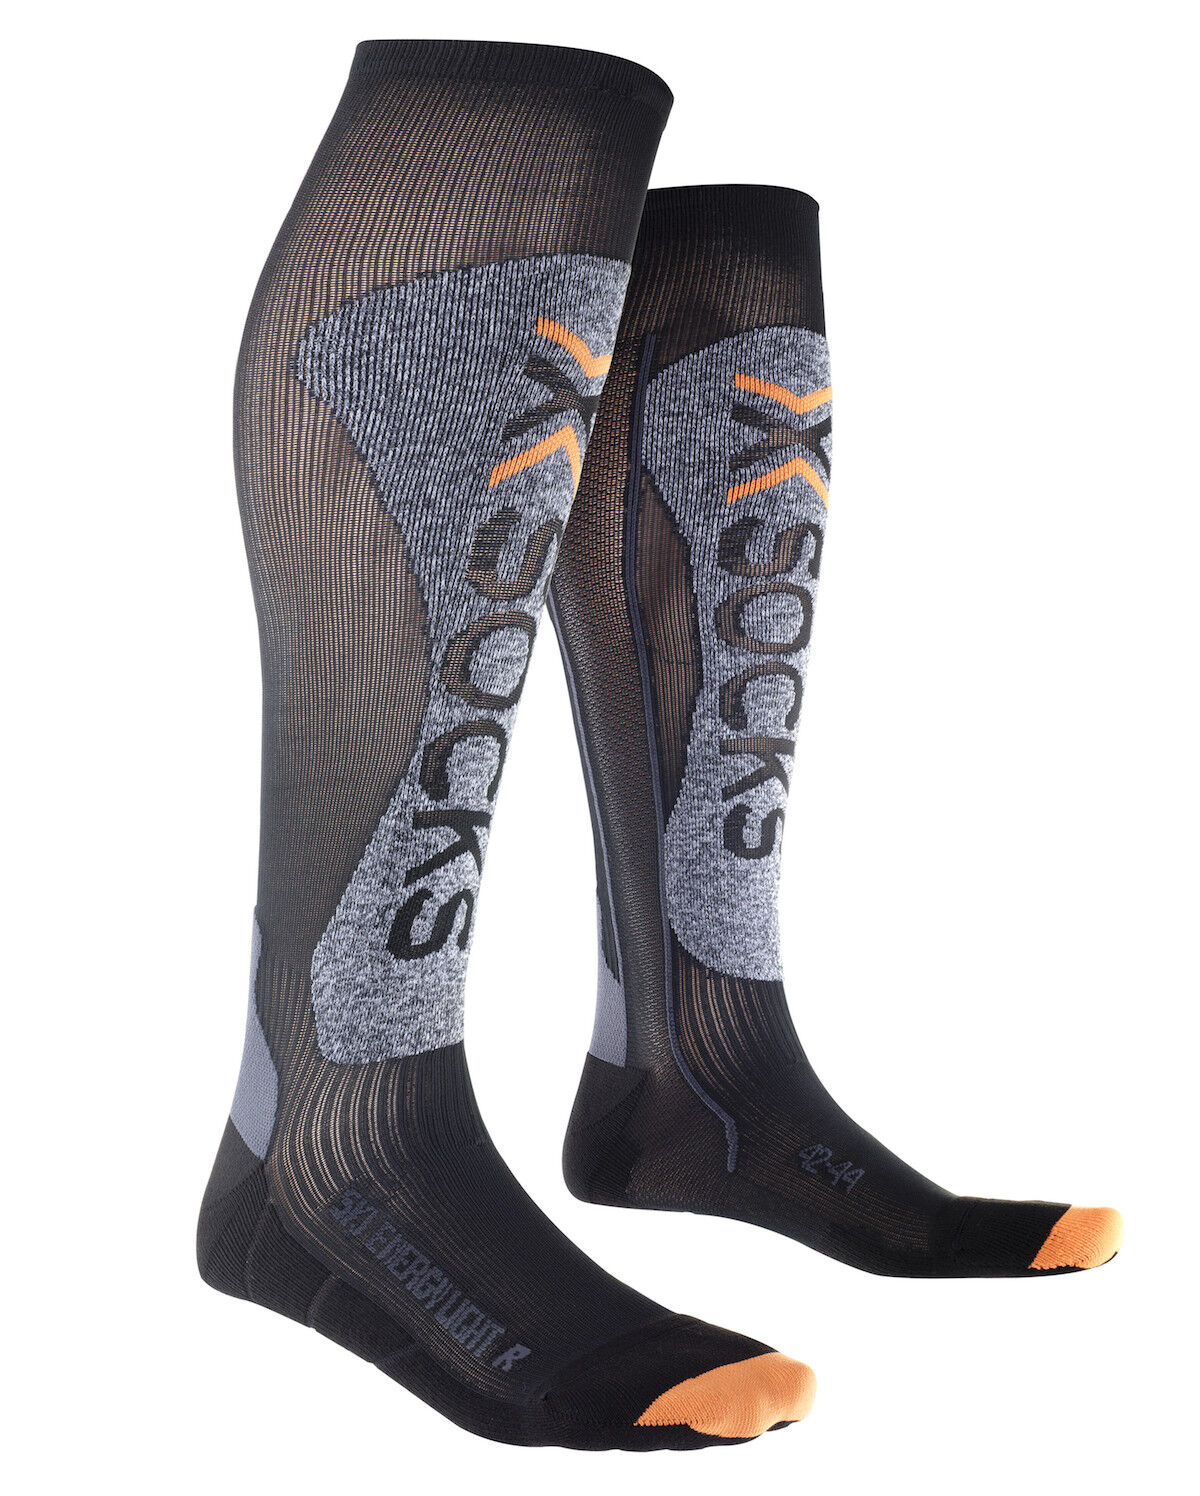 X-Socks Ski Energizer Light - Skisokken